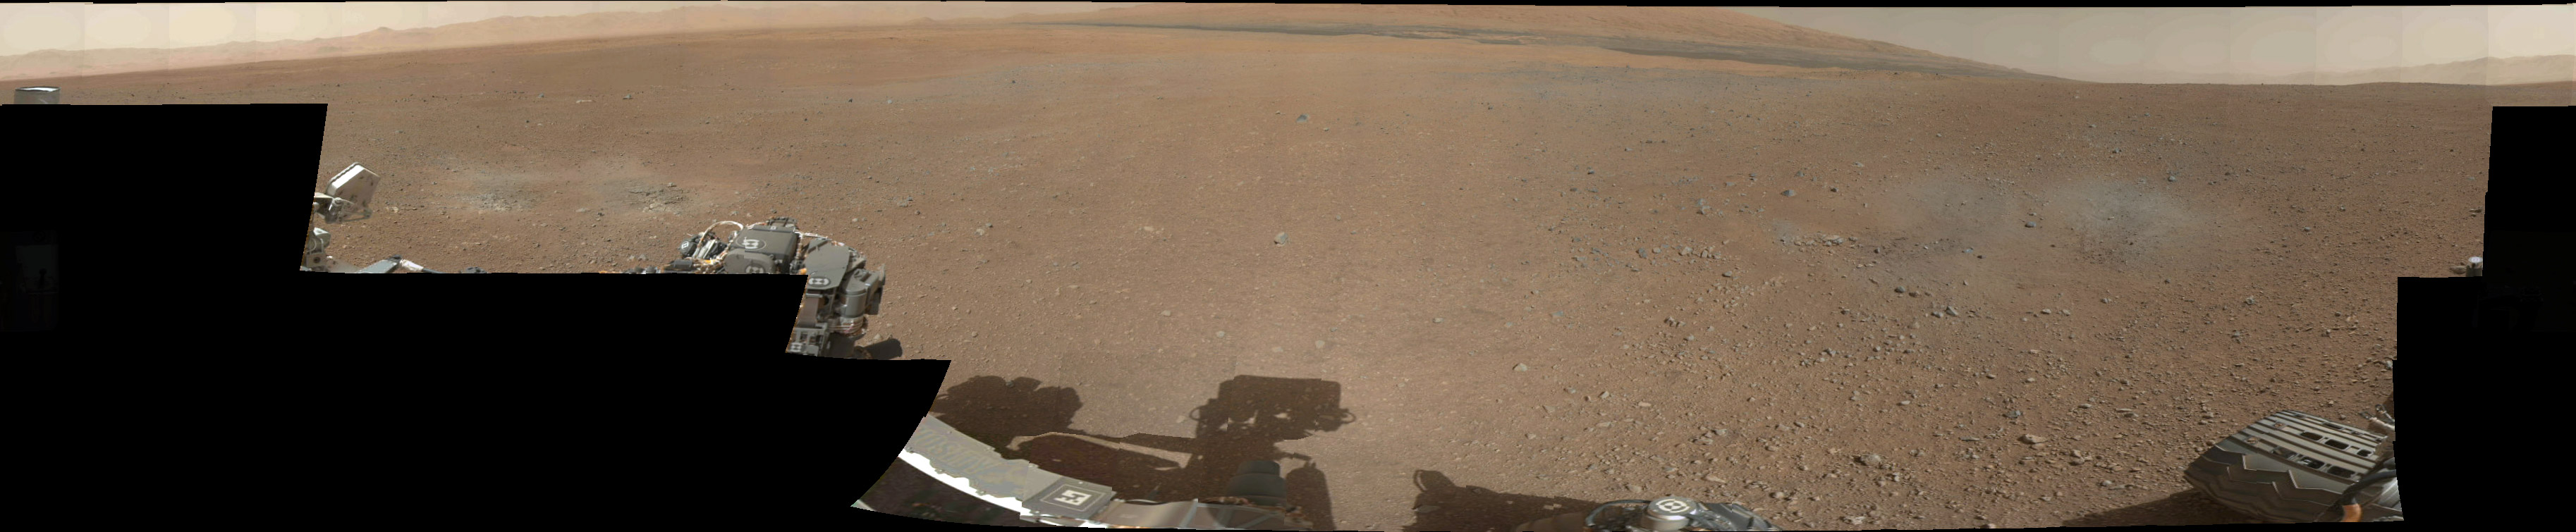 Le premier panorama à 360° en couleurs, réalisé le 8 août 2012, deux jours après l'arrivée de Curiosity. Il laisse deviner la déclivité des flancs du mont Sharp. © Nasa, JPL-Caltech